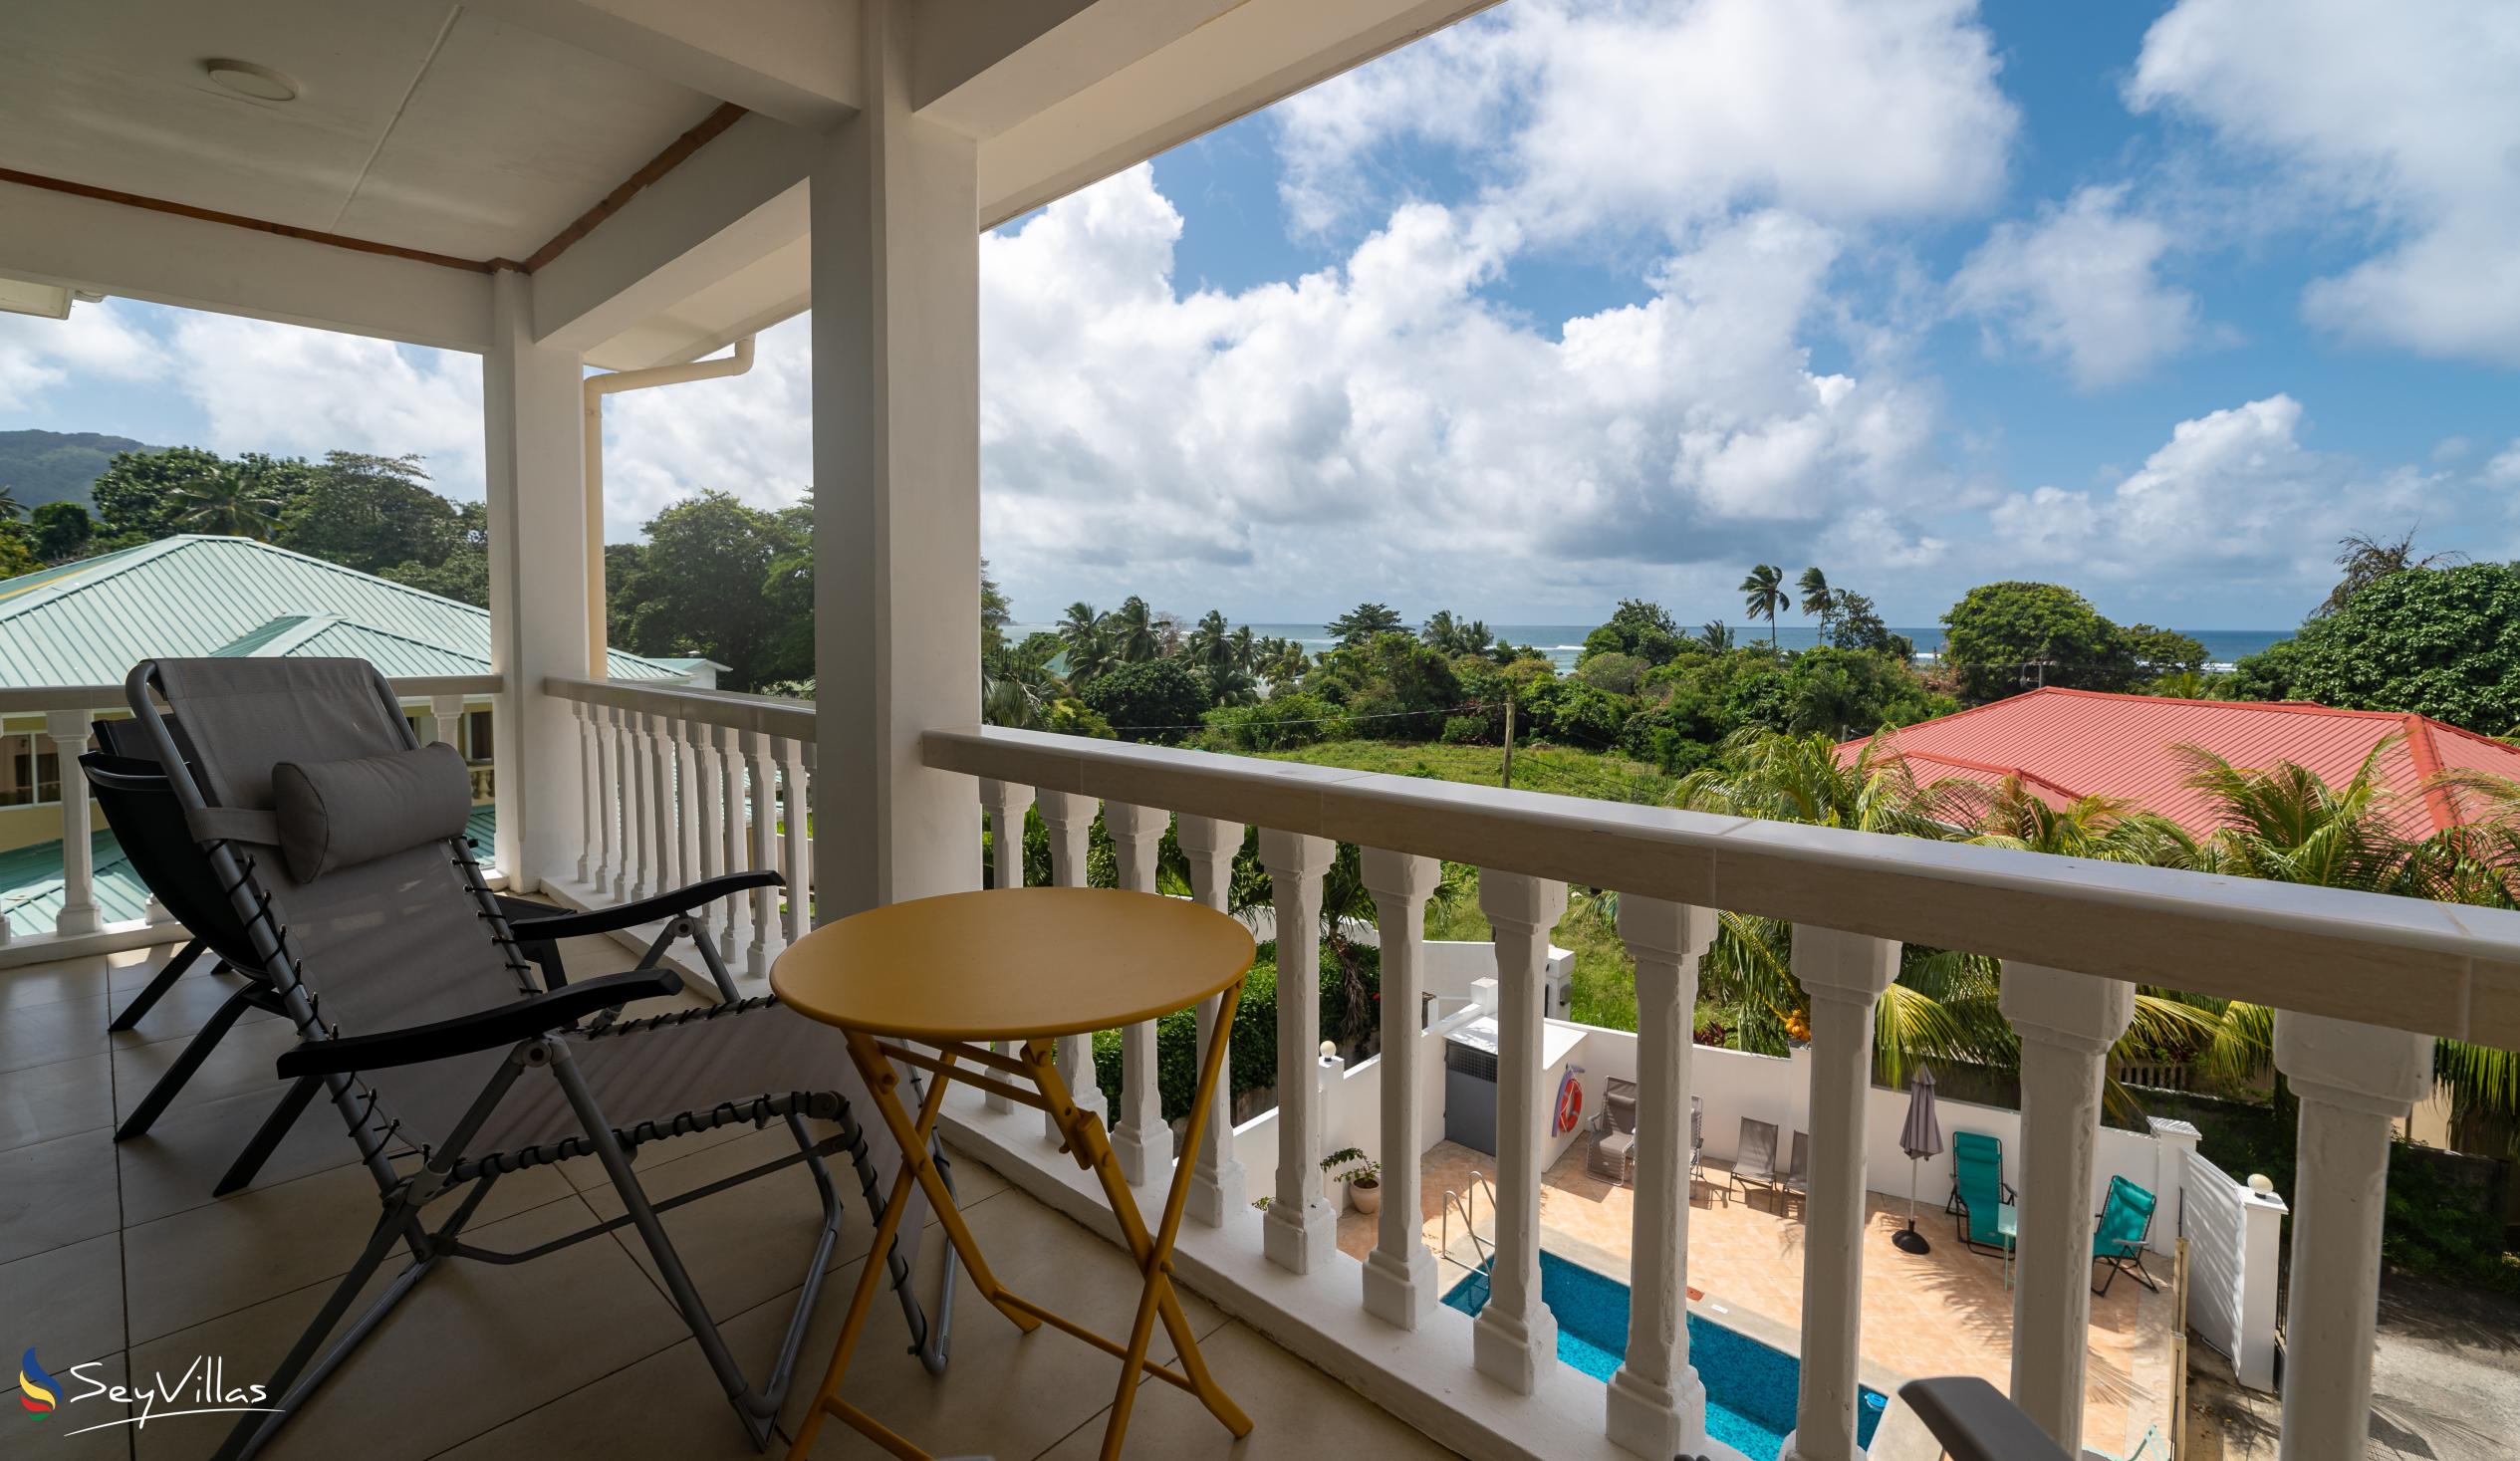 Photo 68: Cap Confort - 1-Bedroom Apartment - Mahé (Seychelles)